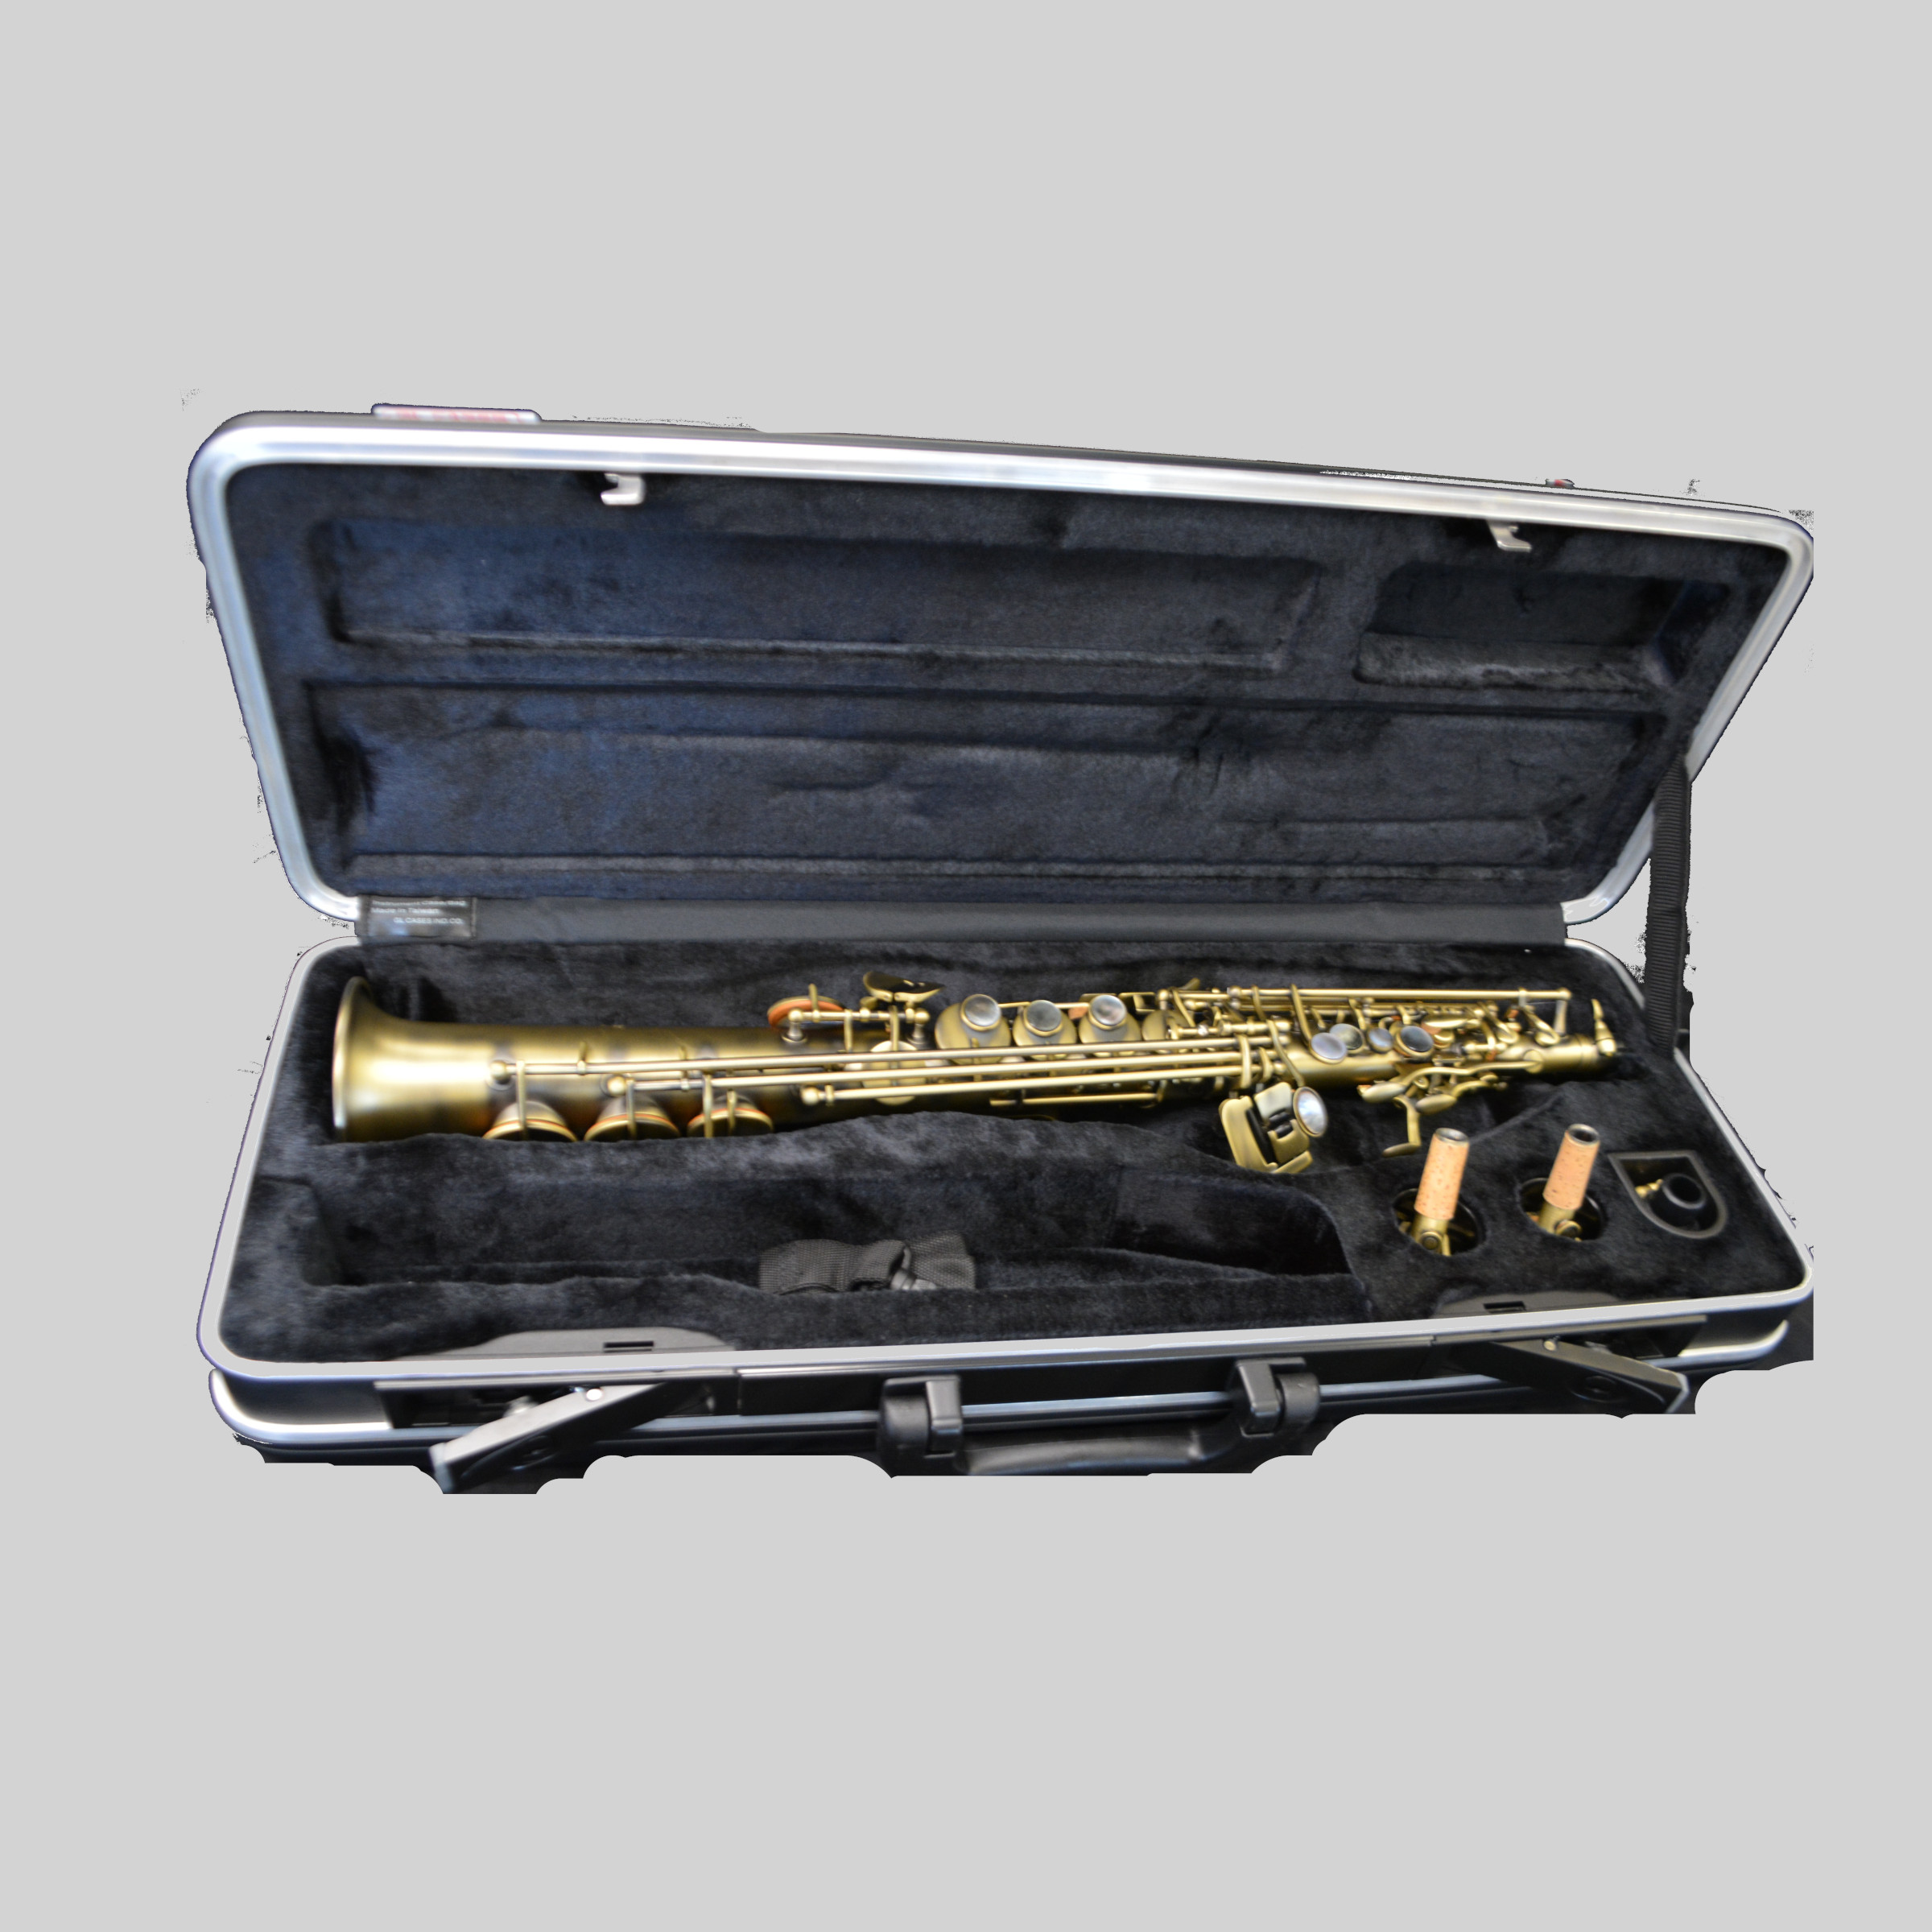 Schiller Elite V Luxus Soprano Saxophone Antique Brass Plated Luxus Finish